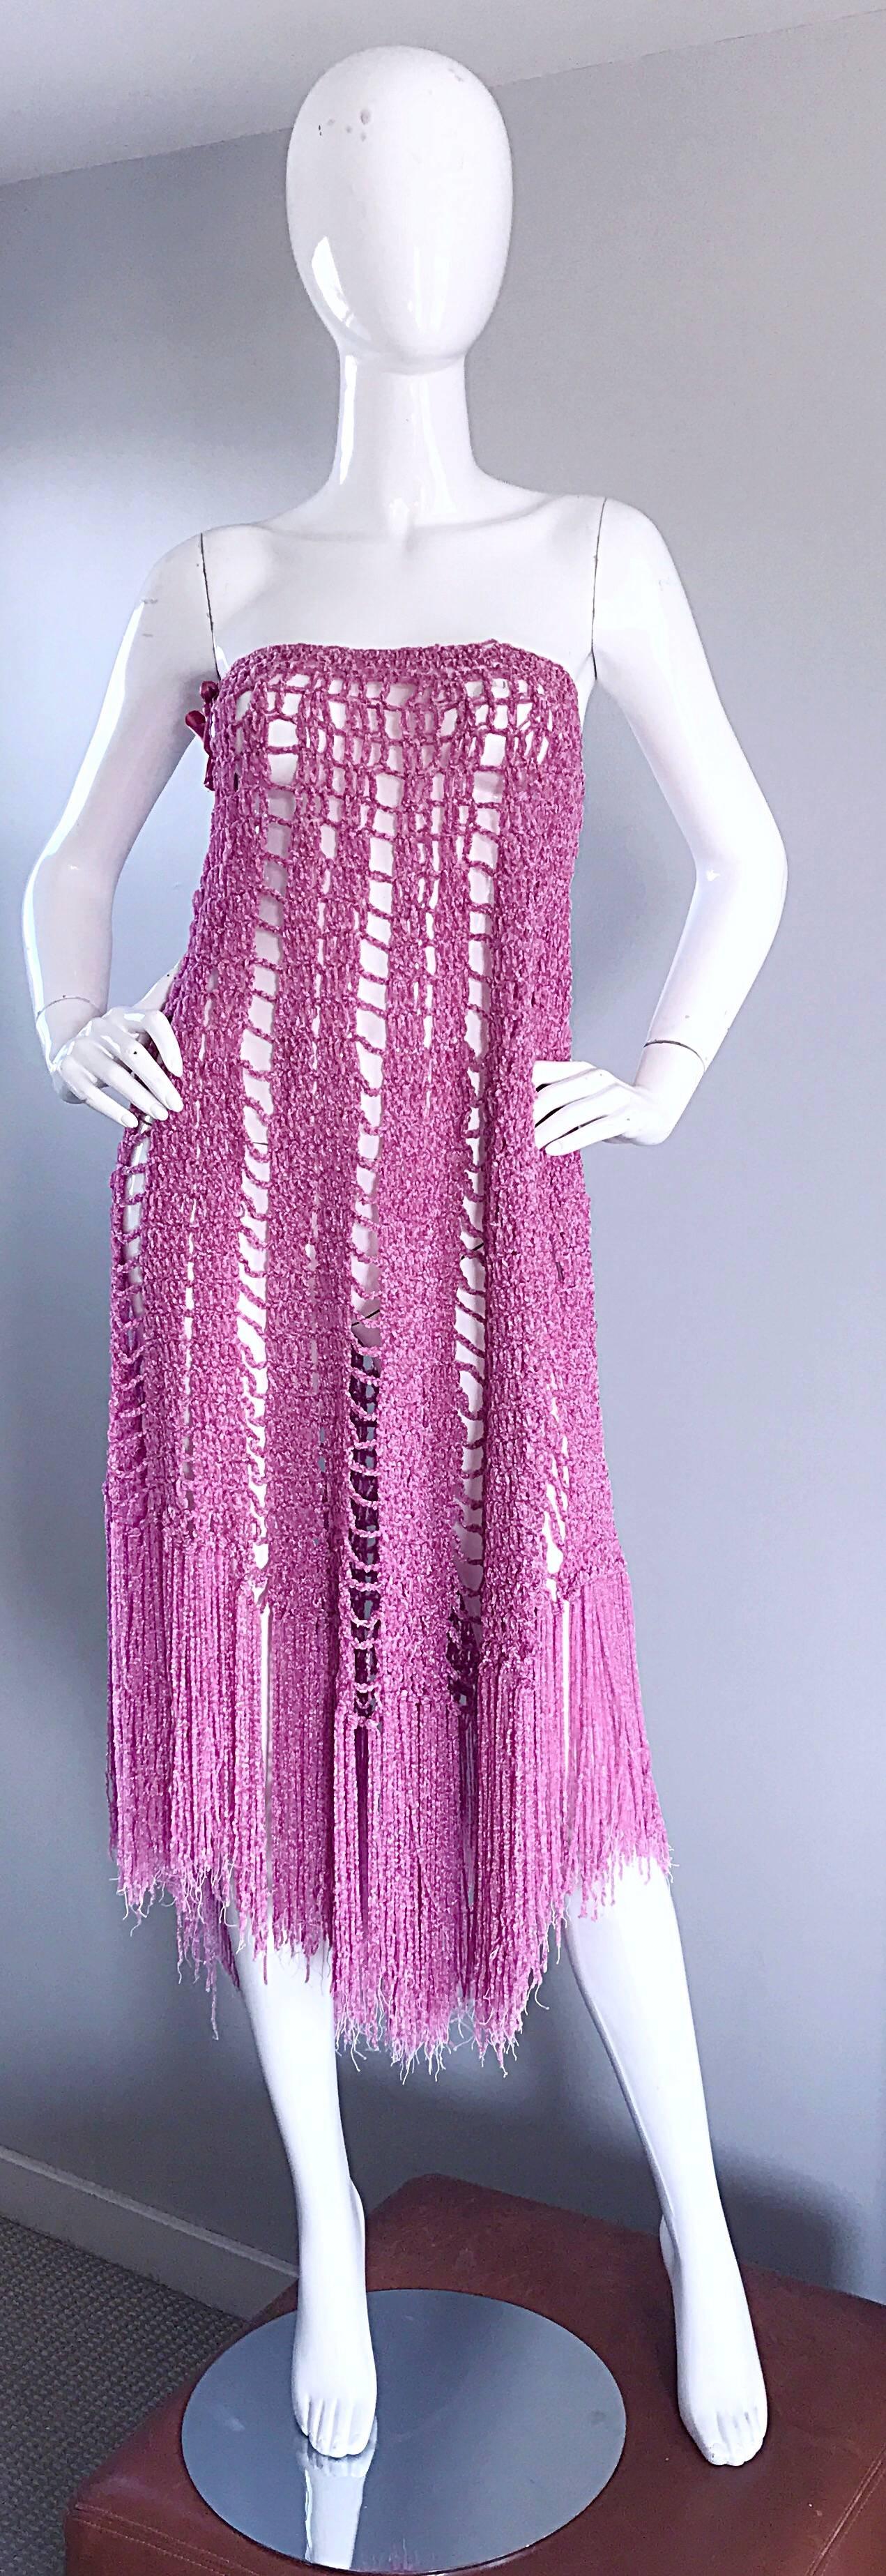 Women's Joseph Magnin 1970s Brand New Pink Vintage Italian Crochet Skirt, Dress or Cape